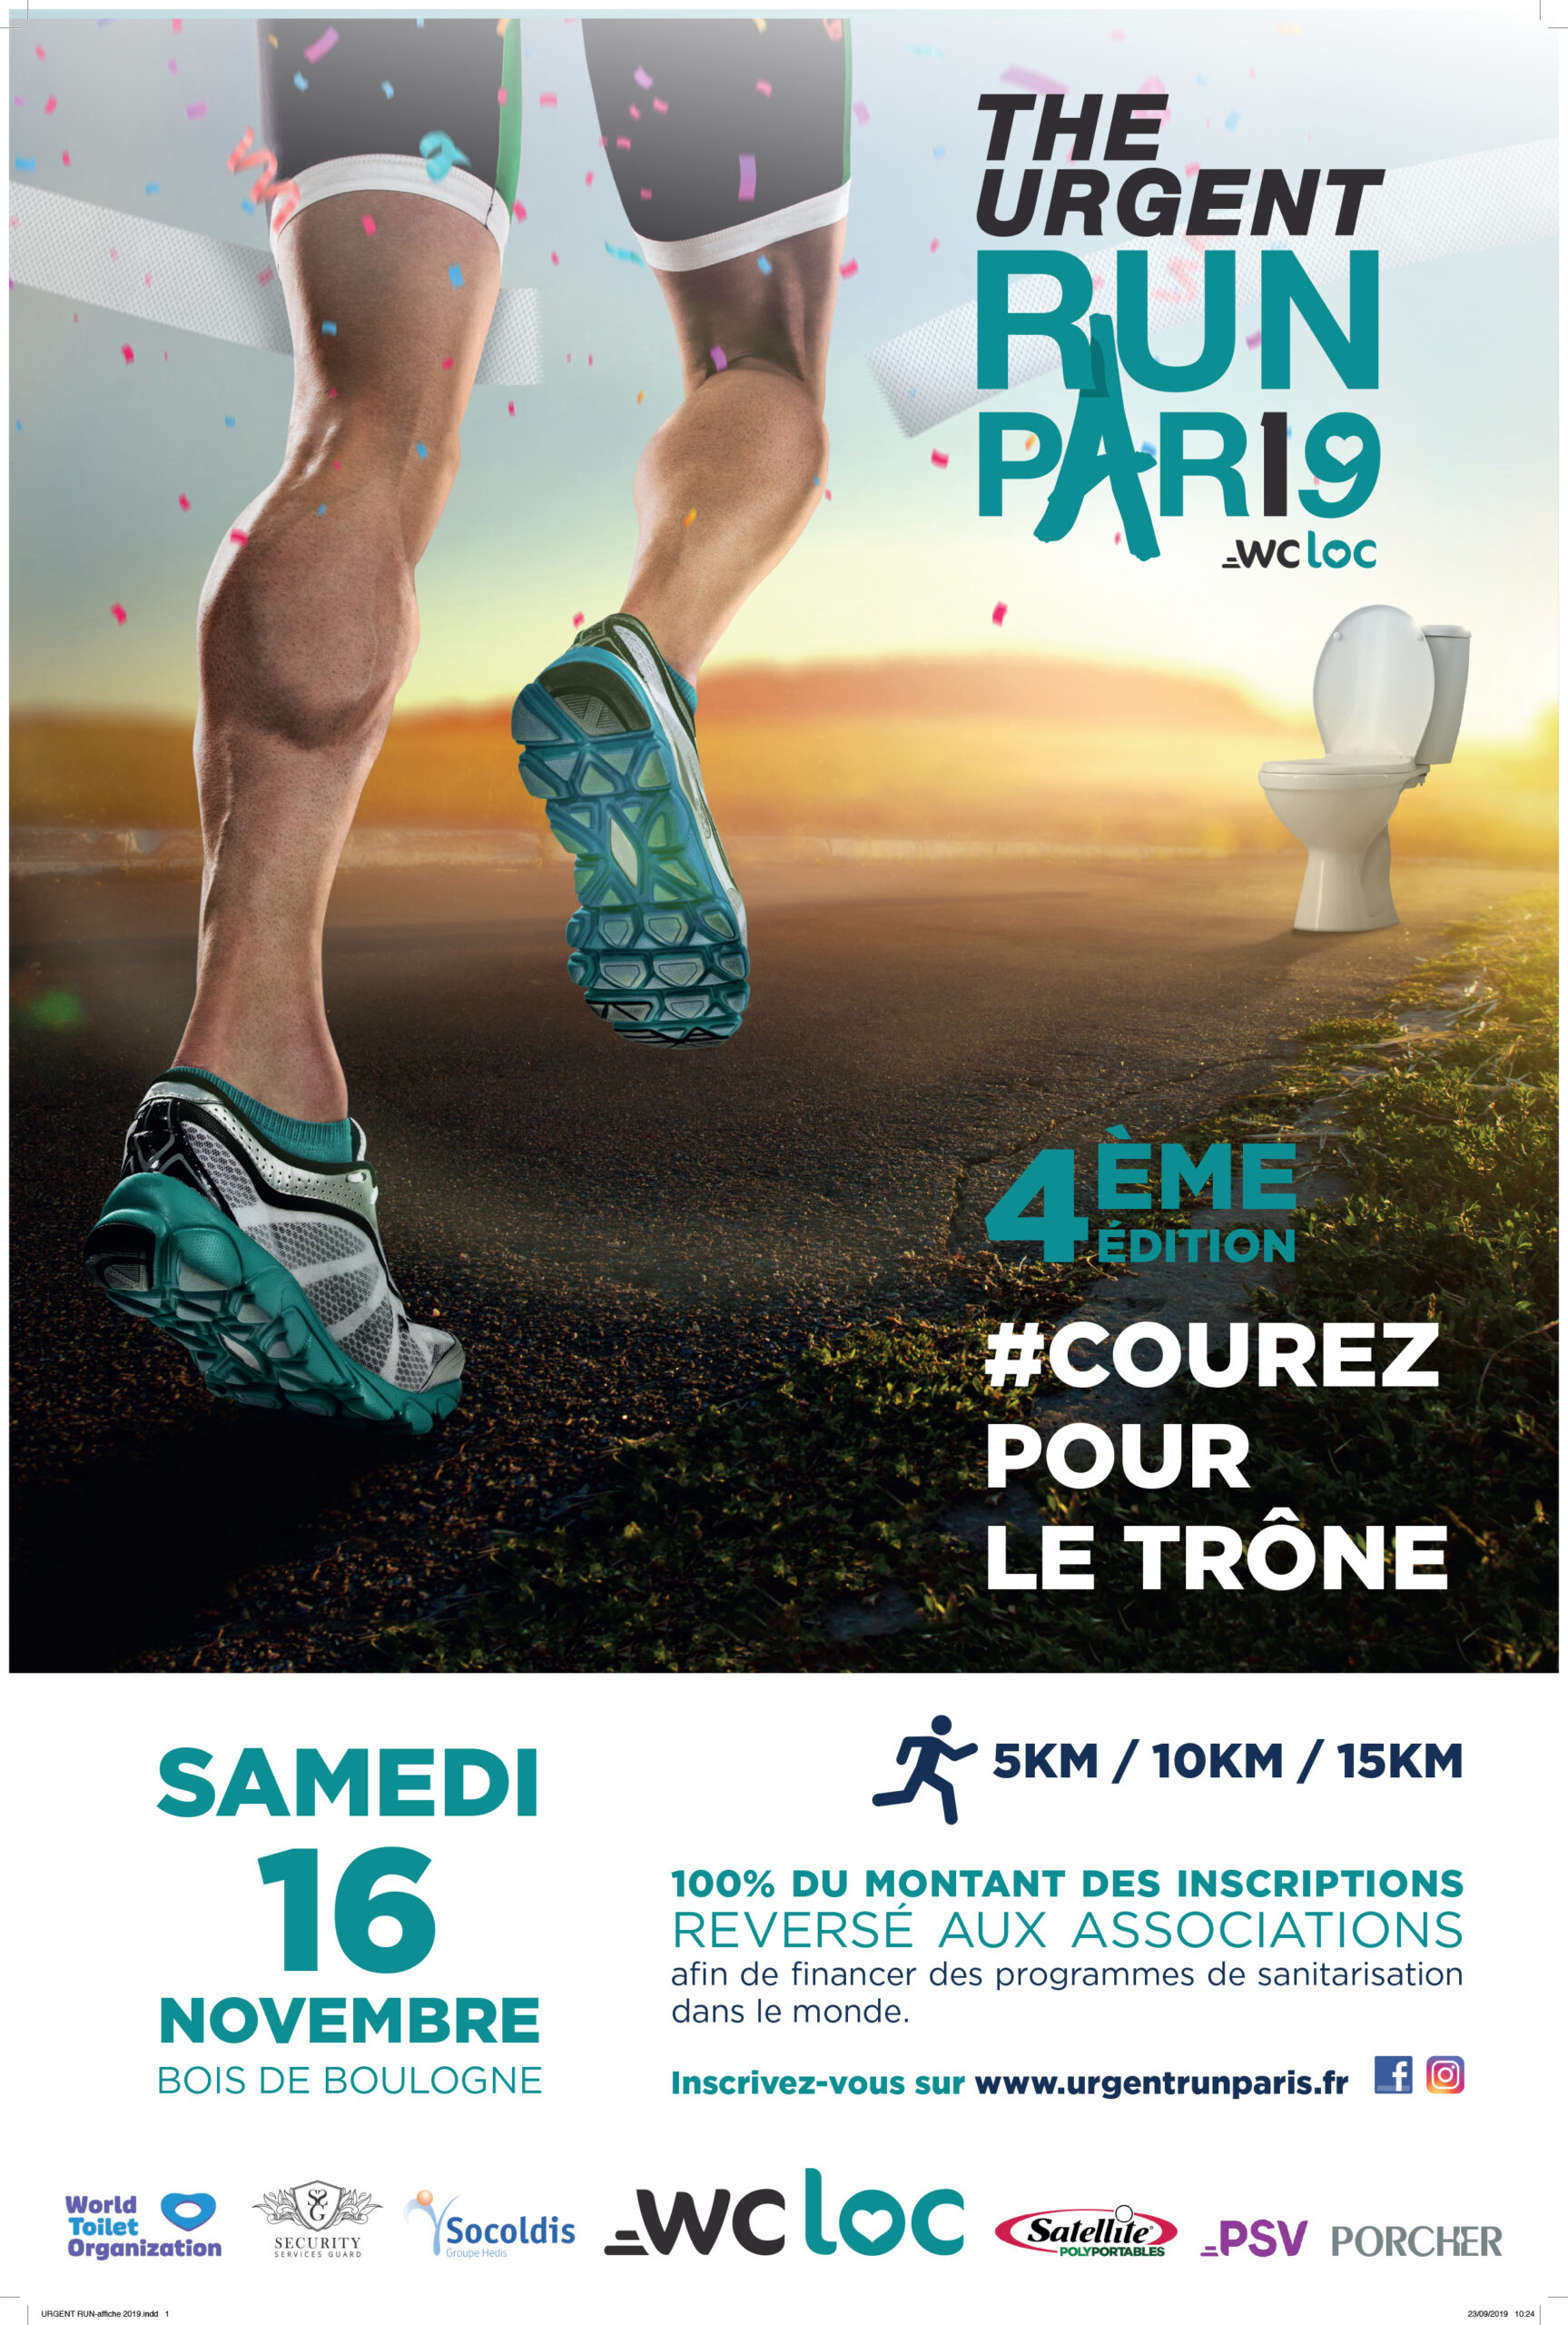 Pour la 4ème édition consécutive, Porcher soutient la course solidaire The Urgent Run Paris